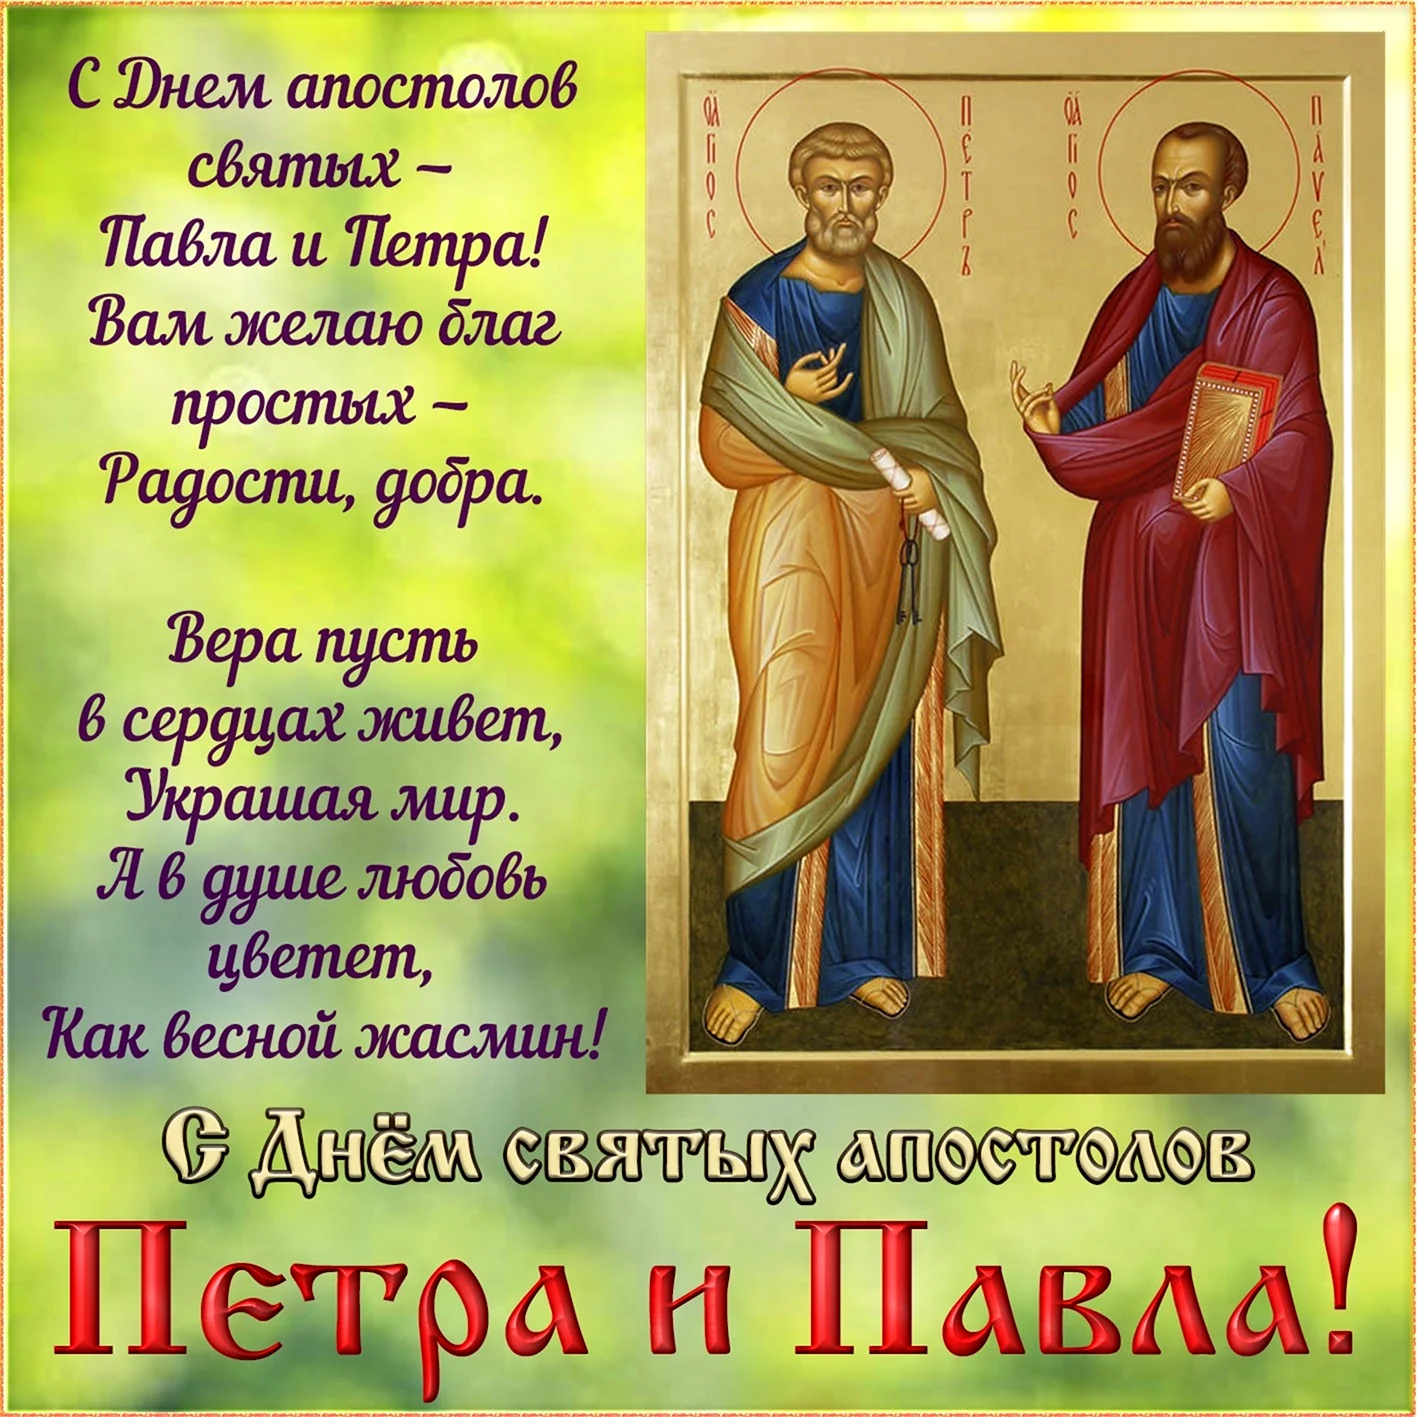 Сднем святые апостололов Петра и Павла